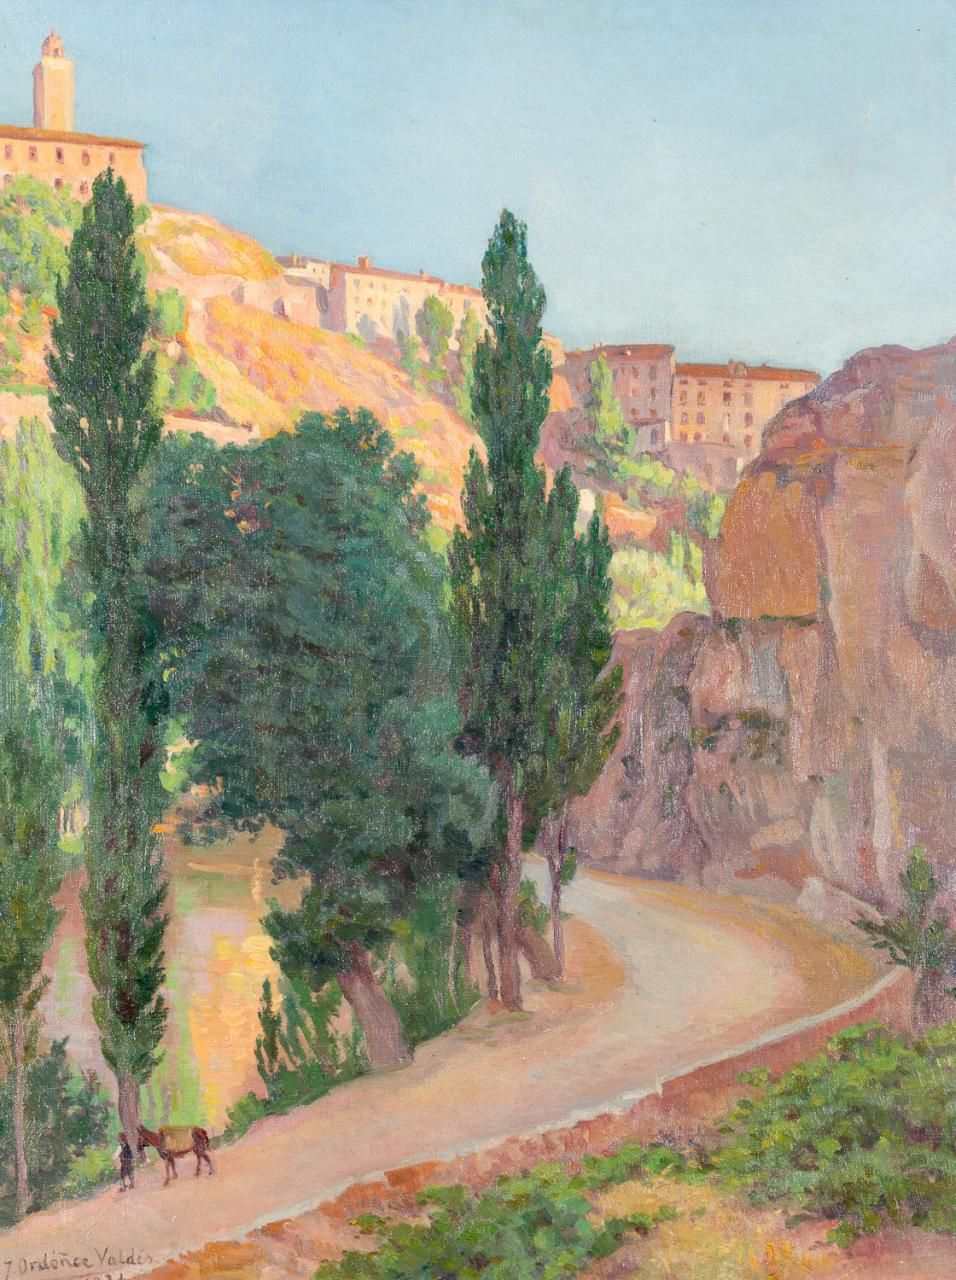 JOSÉ ORDÓÑEZ VALDÉS (Huelva, 1873 - 1953) Landschaft
Öl auf Leinwand
72 x 56 cm
&hellip;